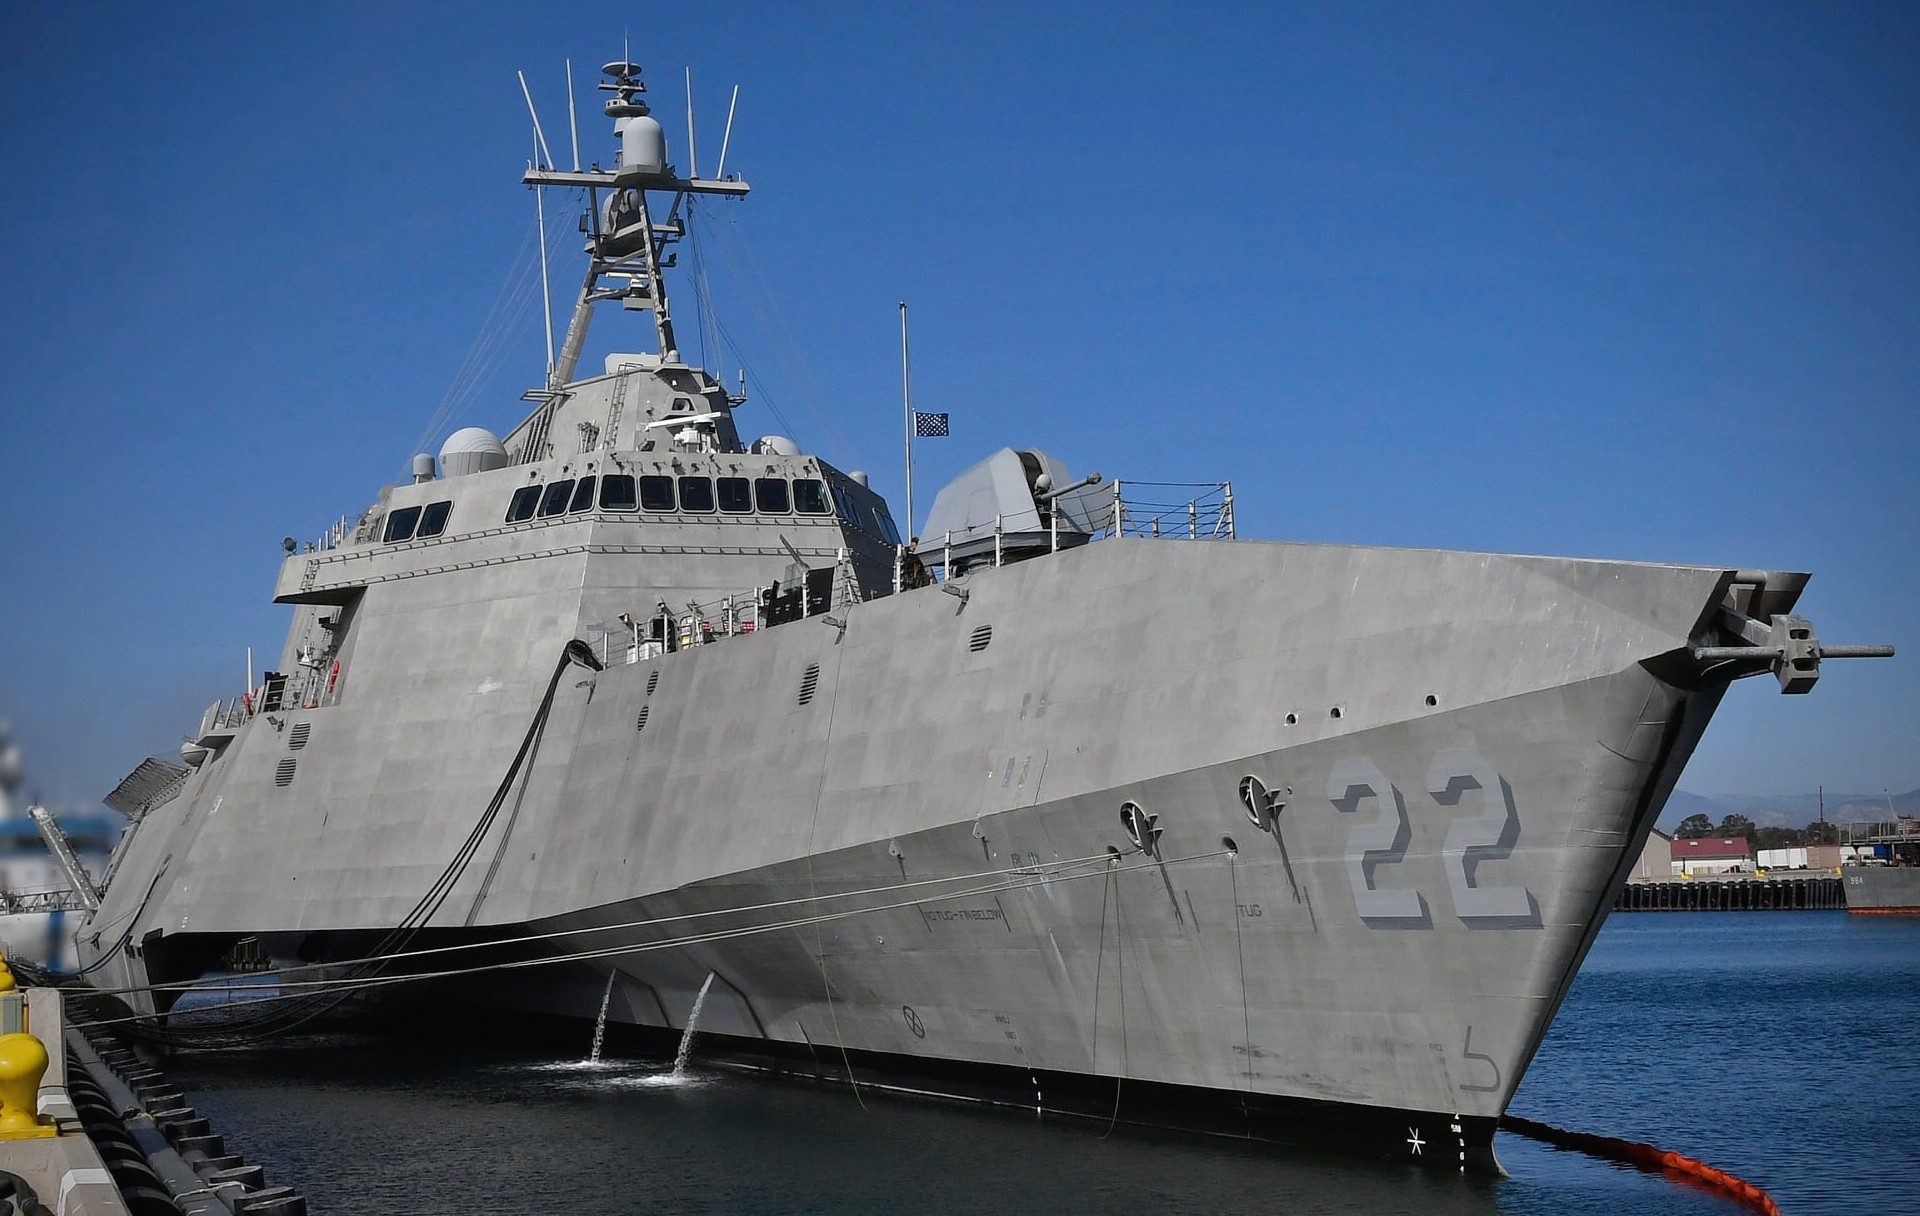 lcs-22 uss kansas city independence class littoral combat ship us navy port hueneme california 21